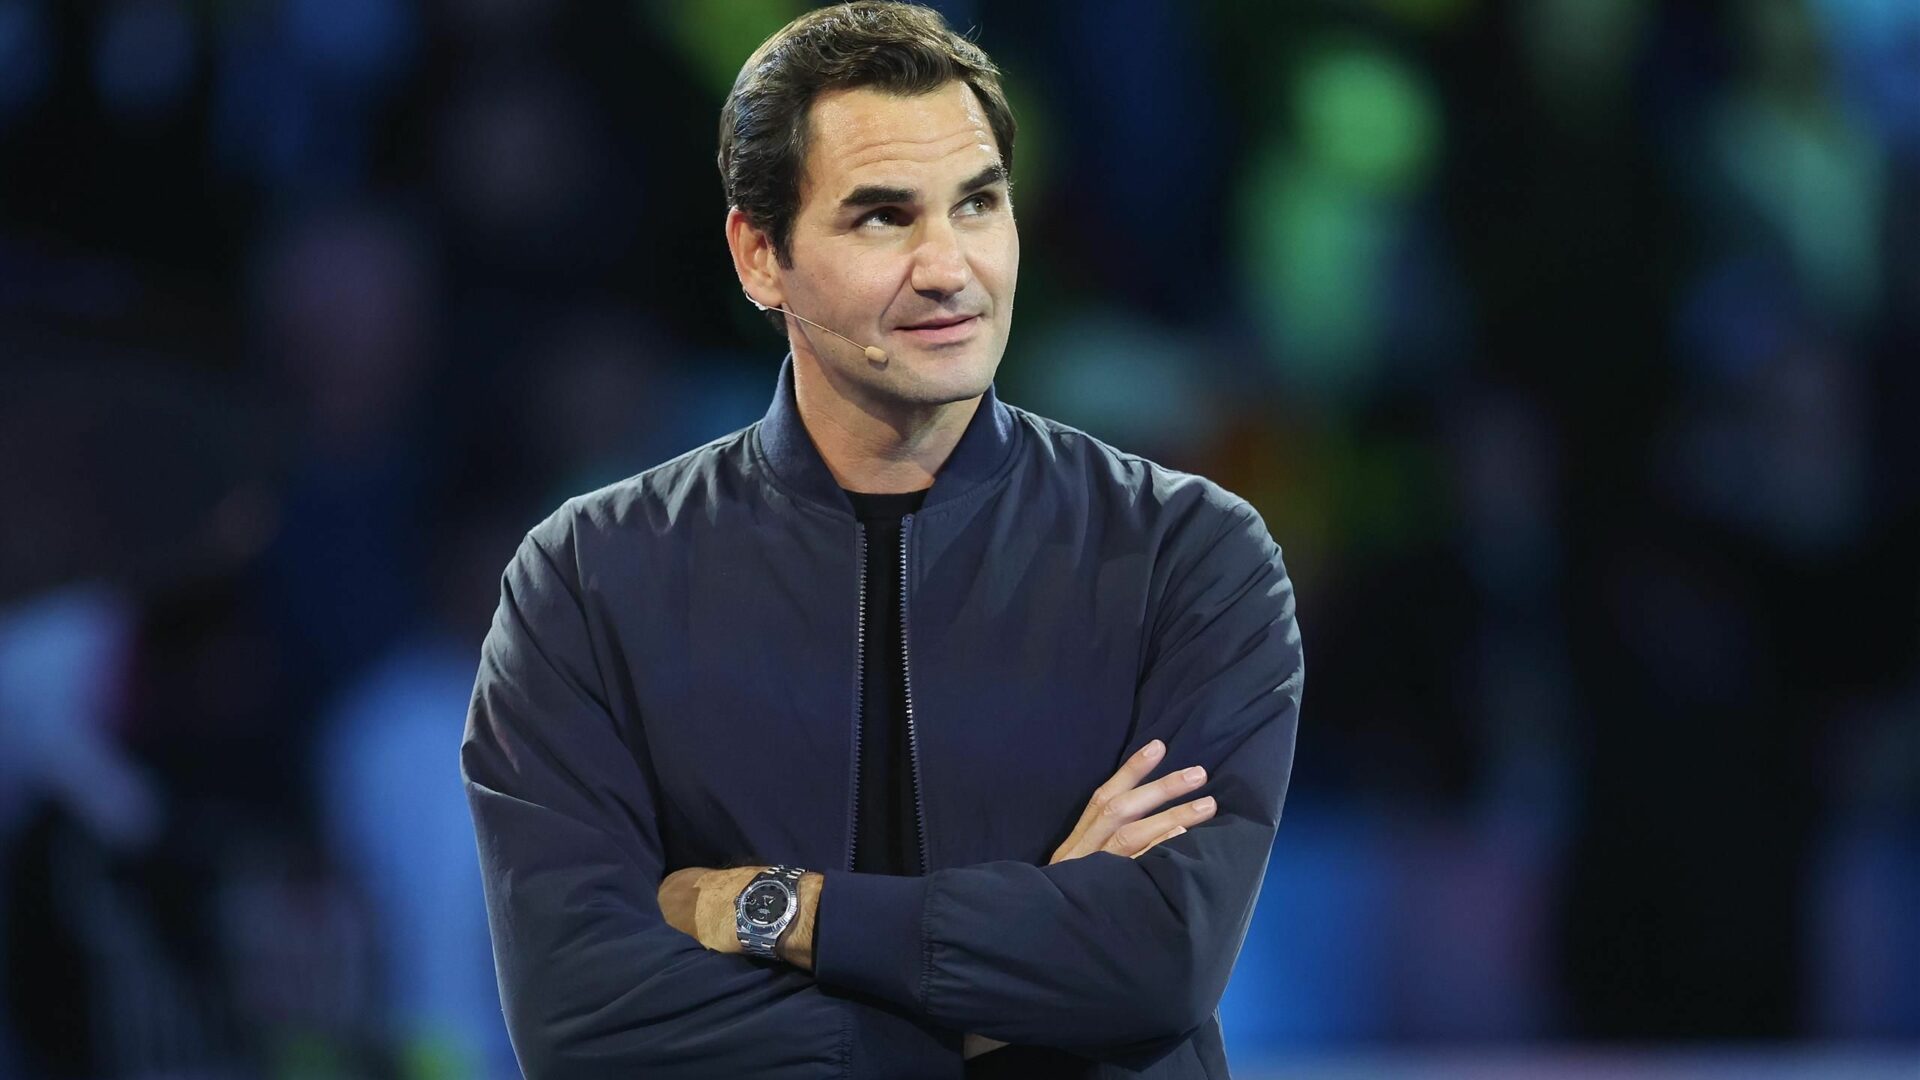 Les baskets de Federer font polémique en Suisse